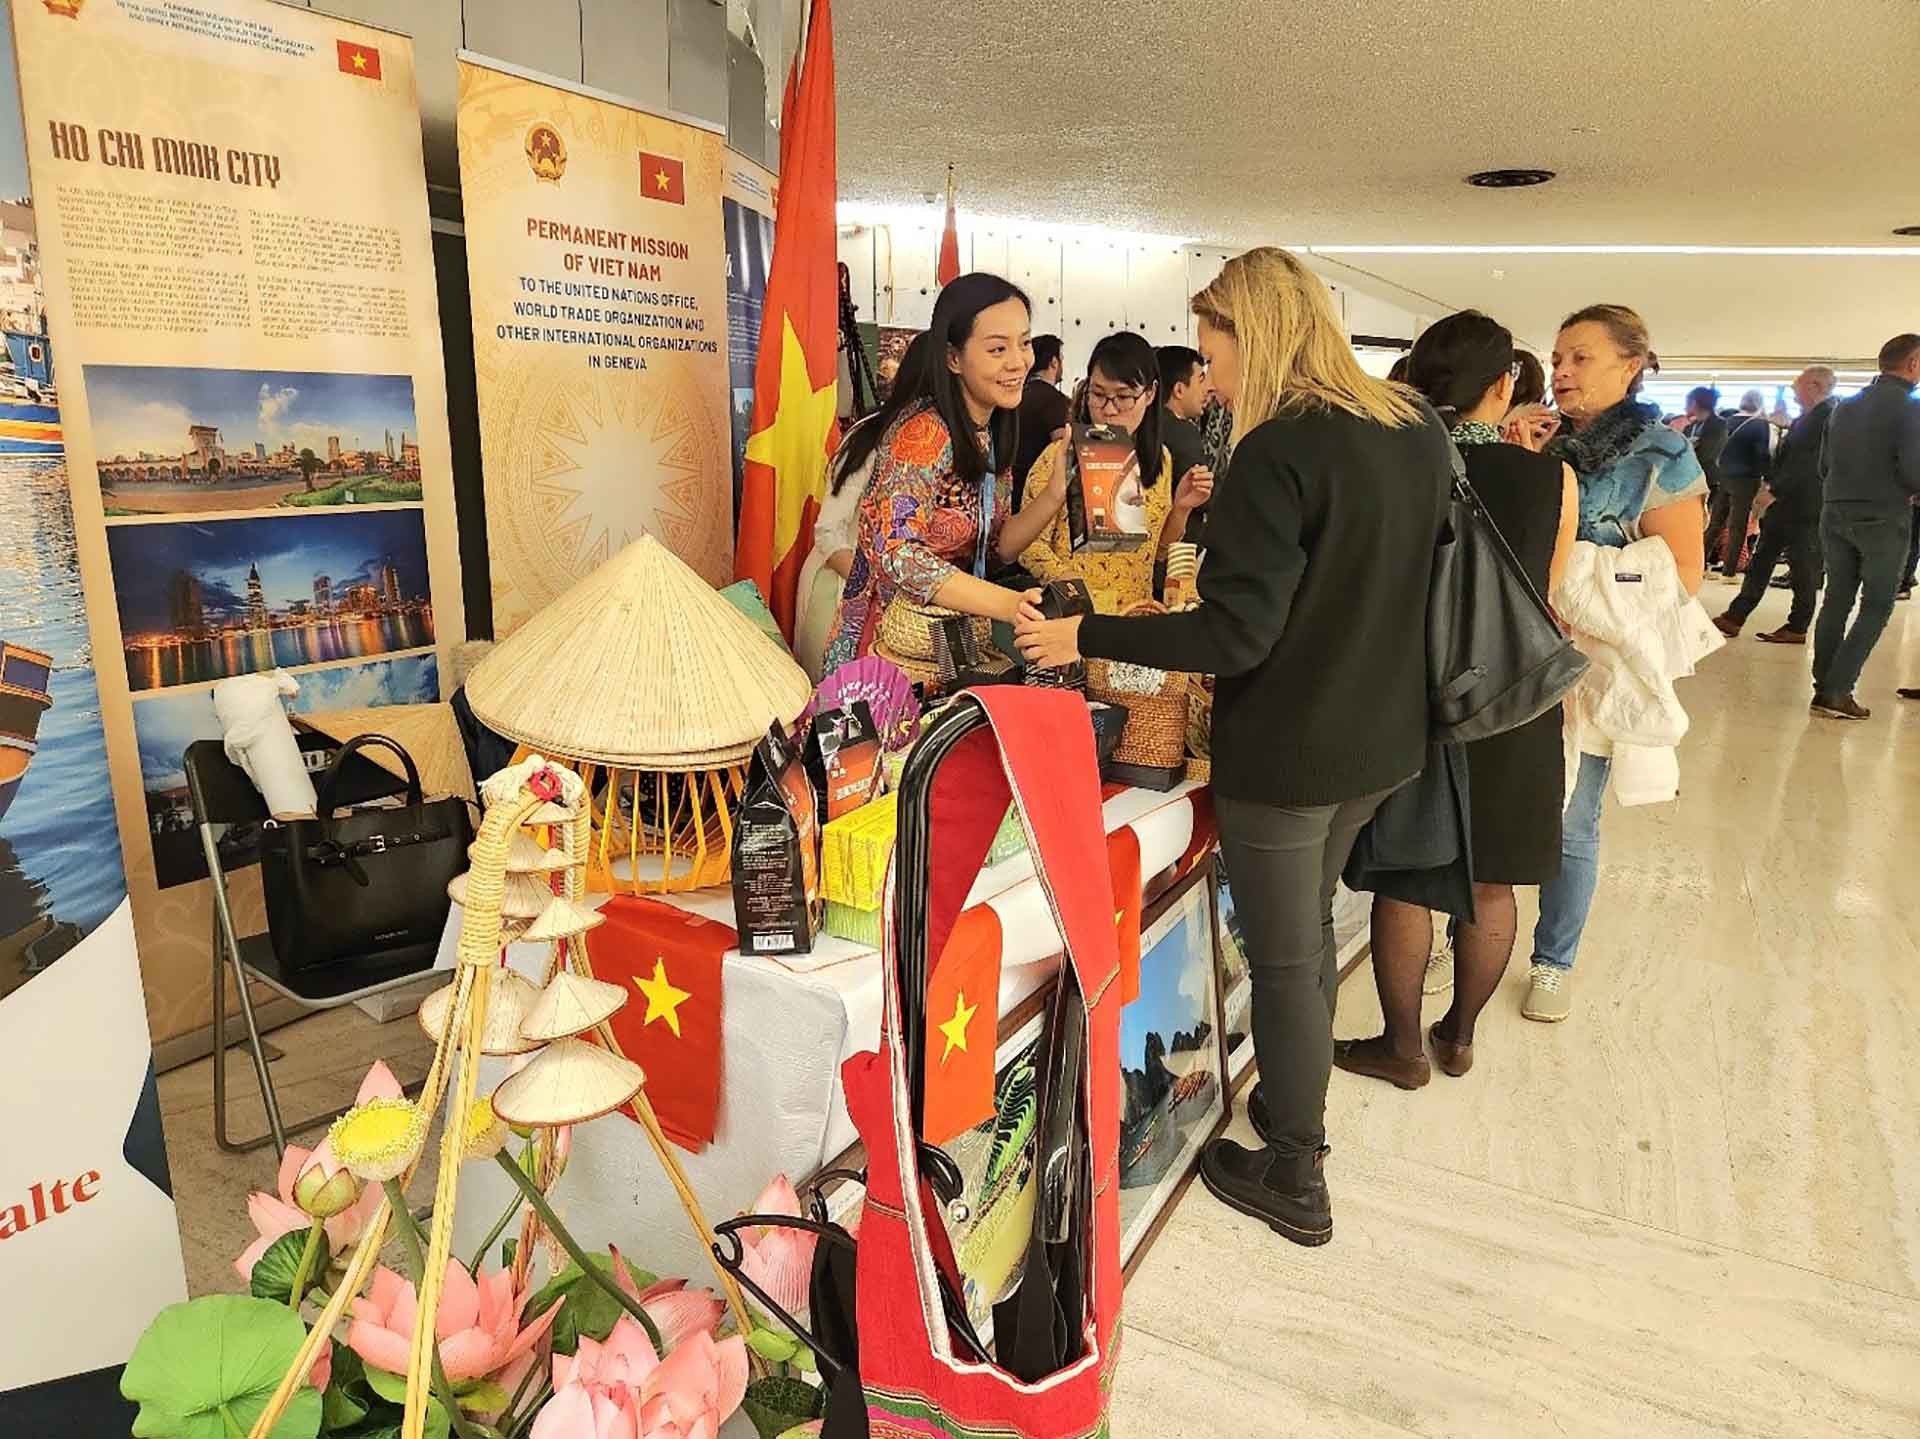 Khách quốc tế đang tìm hiểu về sản phẩm caphe và mỹ nghệ của Việt Nam tại Hội chợ. (Nguồn: TTXVN)